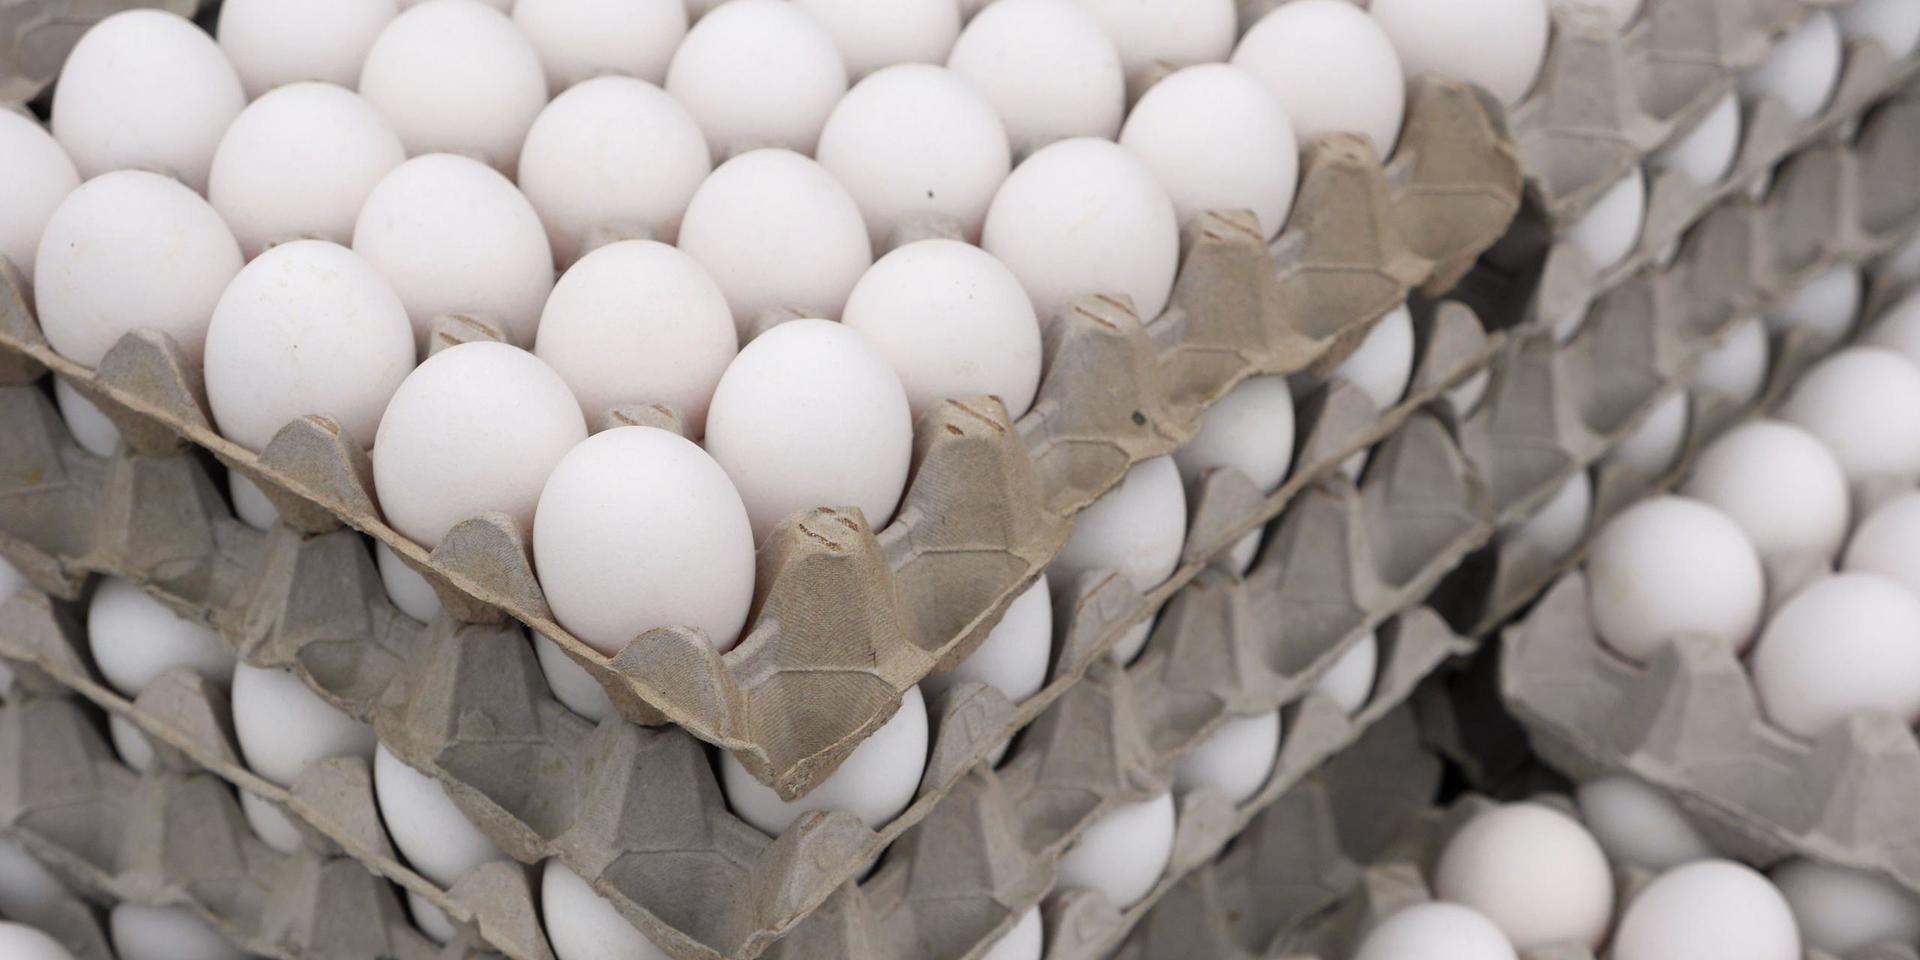 En man i 35-årsåldern försökte stjäla 40 ägg genom att lägga paketen i barnvagnen och sedan försöka gå förbi kassan. 